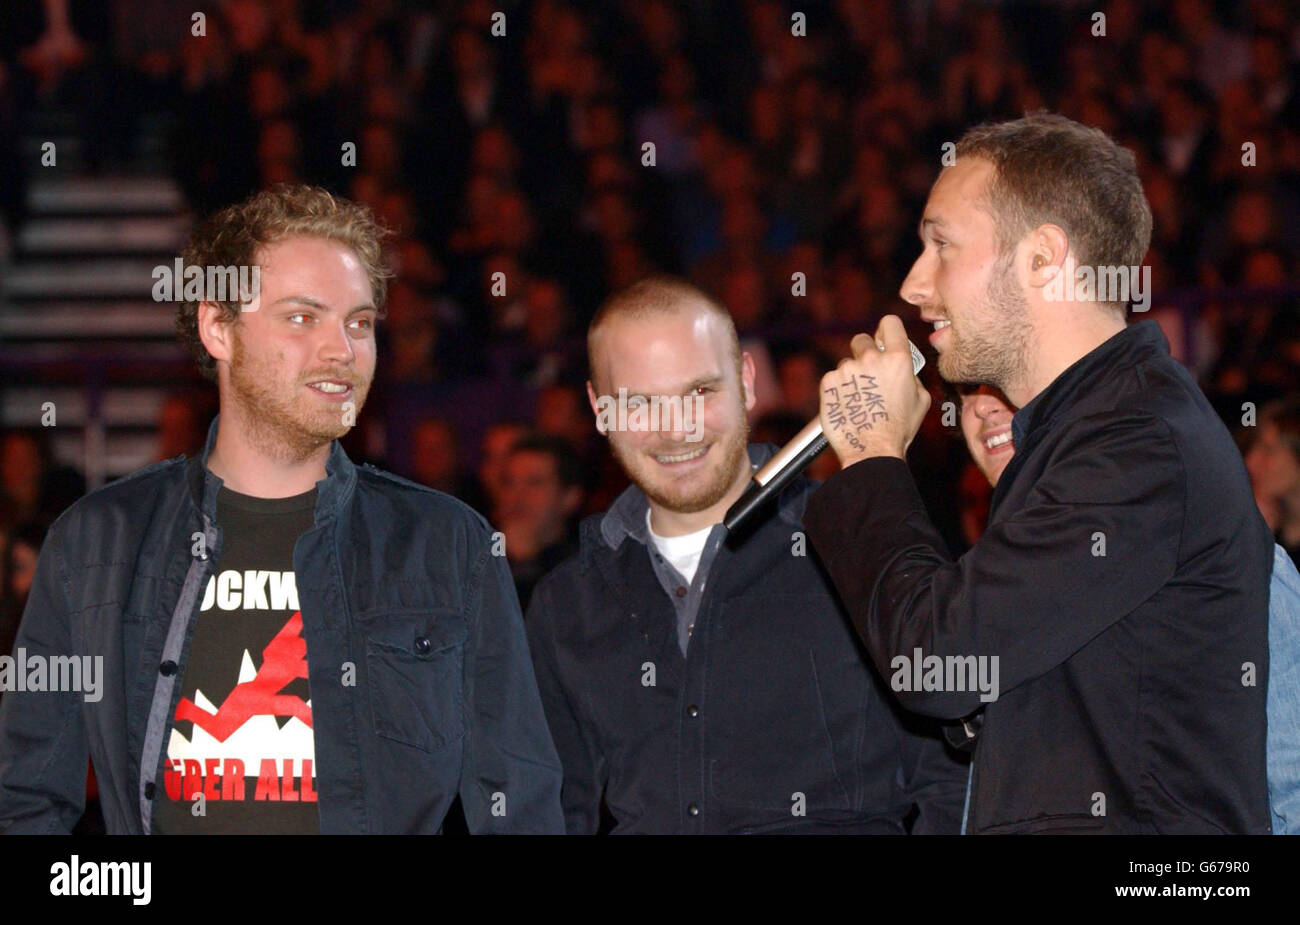 Coldplay si è aggiudicato il premio come miglior album britannico durante i Brit Awards 2003 all'Earls Court 2, Londra. Da strenuanti wannabes pop per chitarra a caramelle per una star hollywoodiana, Coldplay ha fatto molta strada in un breve lasso di tempo. Appena tre anni fa la band stava cercando di strascare il tradizionale circuito poky locale, sperando di ritagliarsi una carriera musicale dopo la laurea. Ora hanno il mondo ai loro piedi, una carriera promettente negli Stati Uniti, e il frontman Chris Martin sta datando Gwyneth Paltrow. Il successo è arrivato nell'estate del 2000 con una sorpresa top five hit, Yellow. E della band Foto Stock